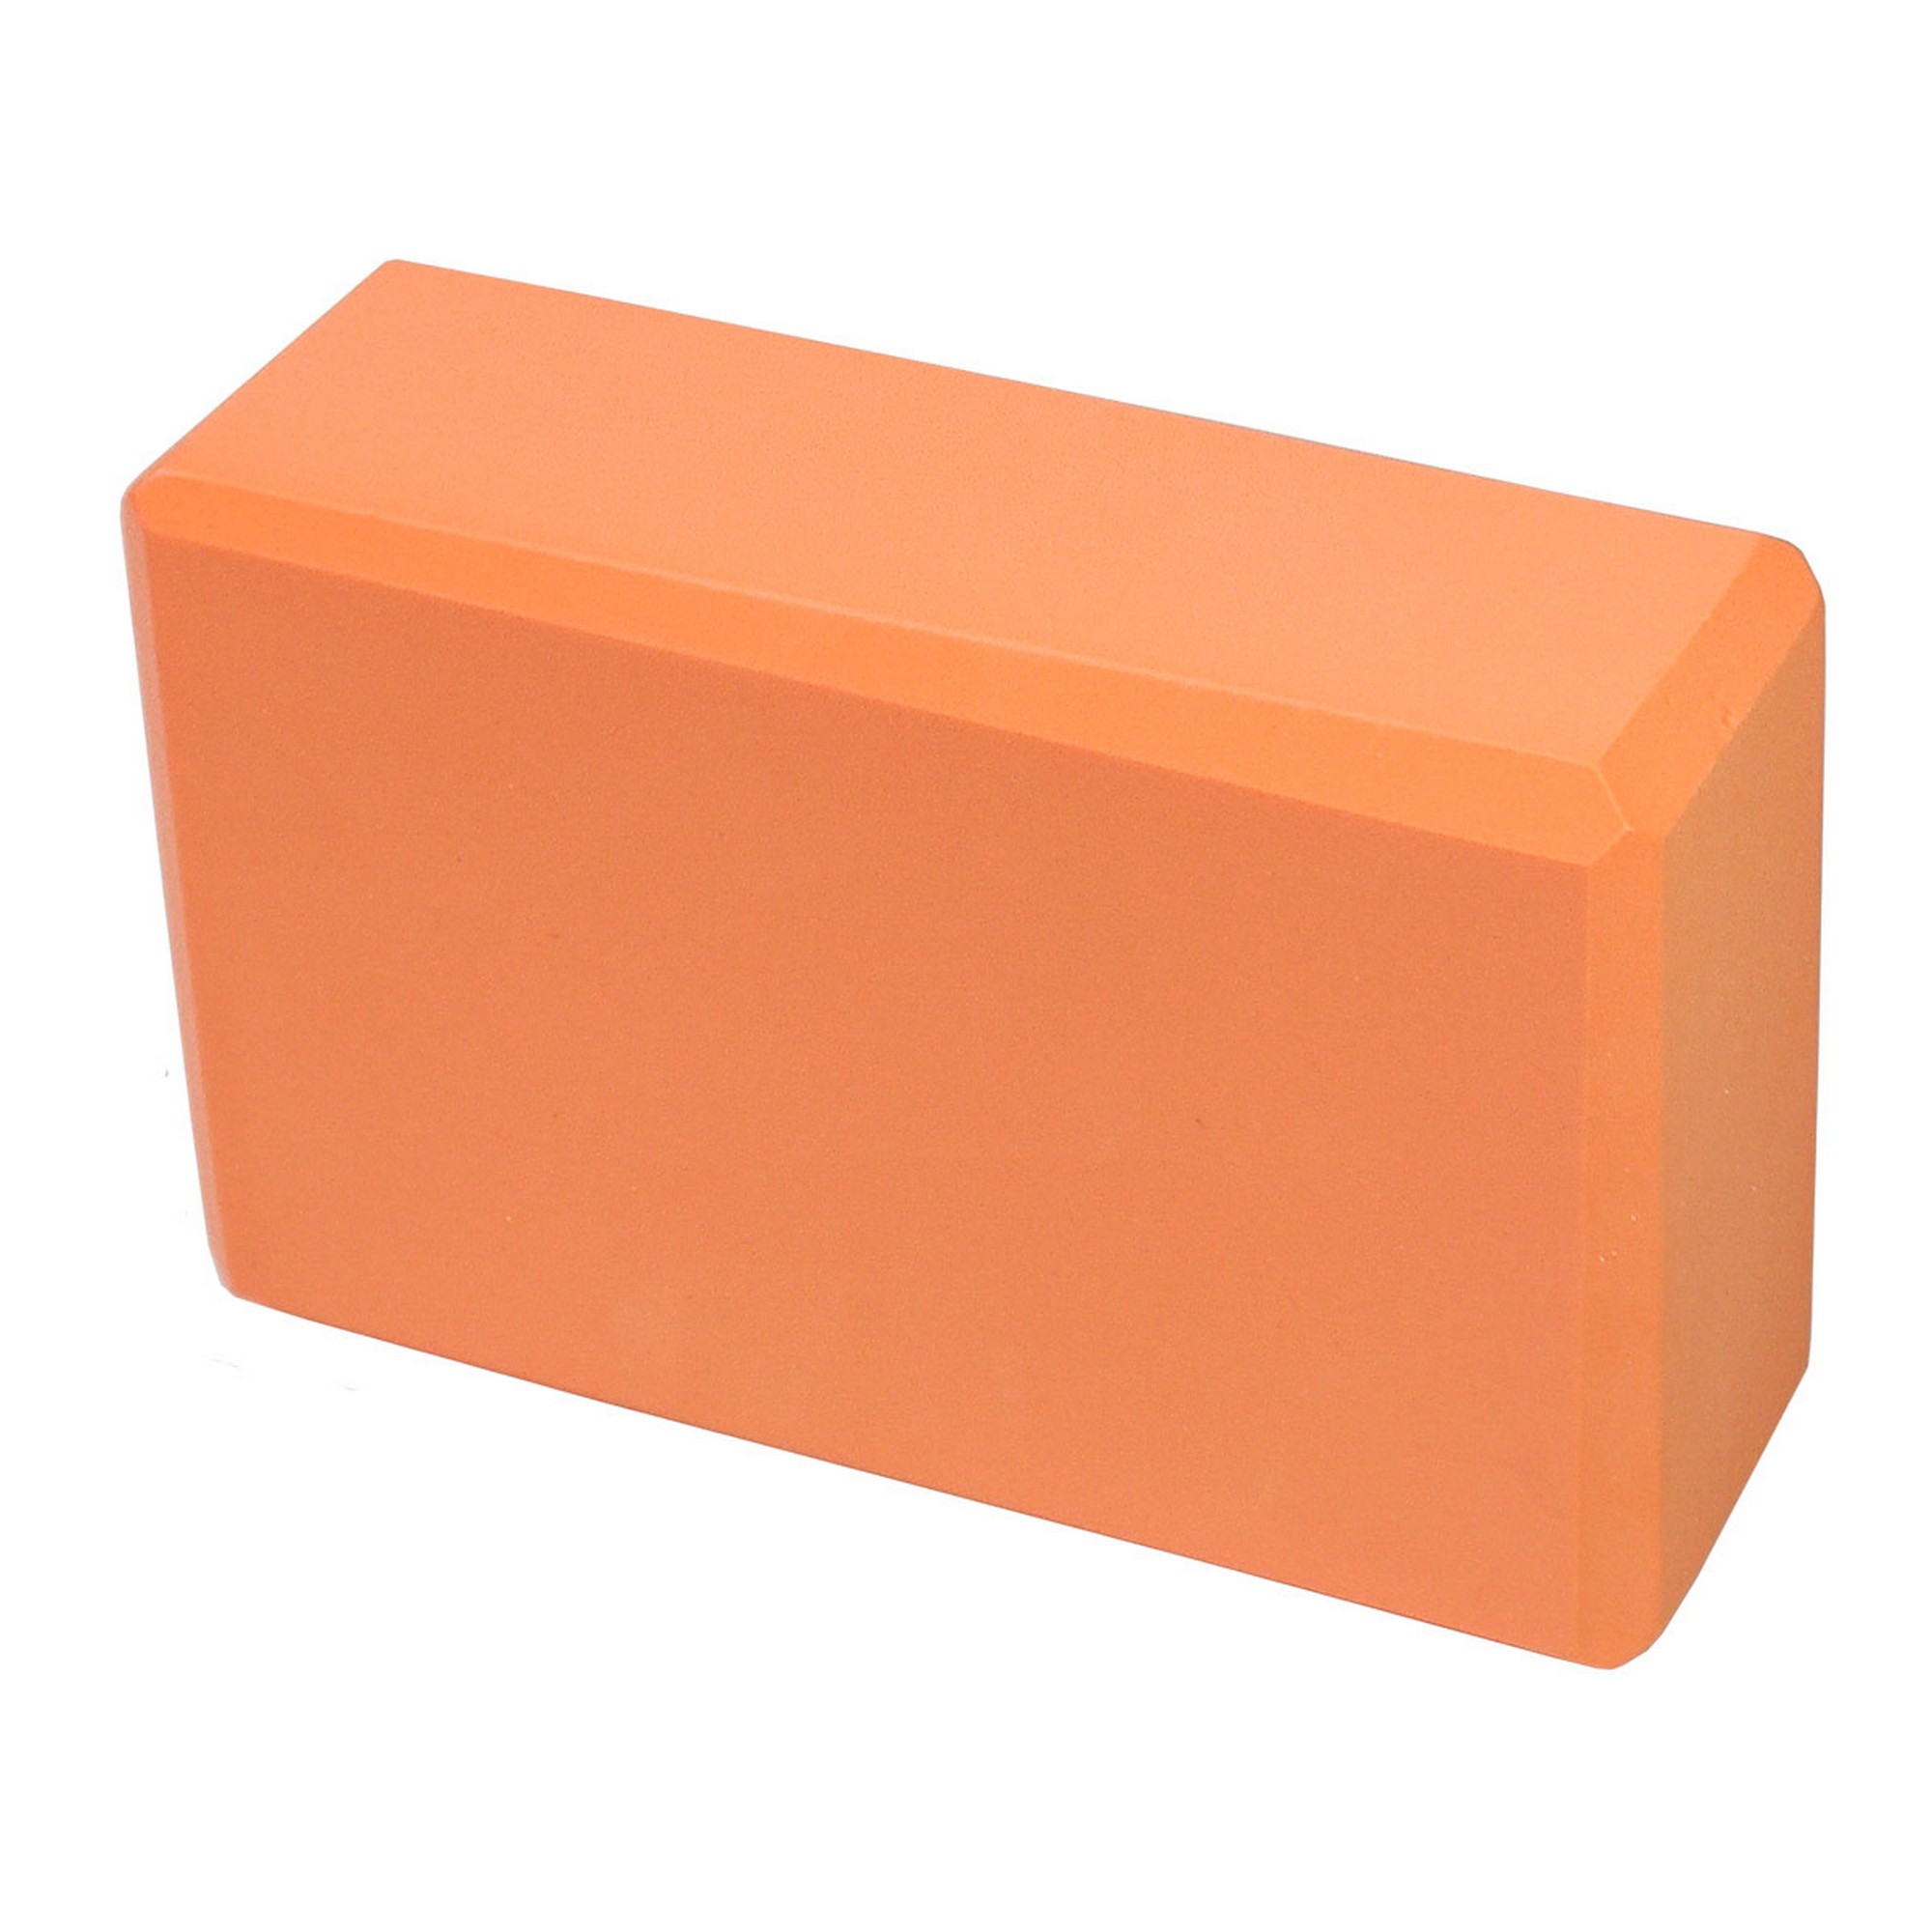 Йога блок Sportex полумягкий, из вспененного ЭВА 22,3х15х7,6 см E39131-8 оранжевый